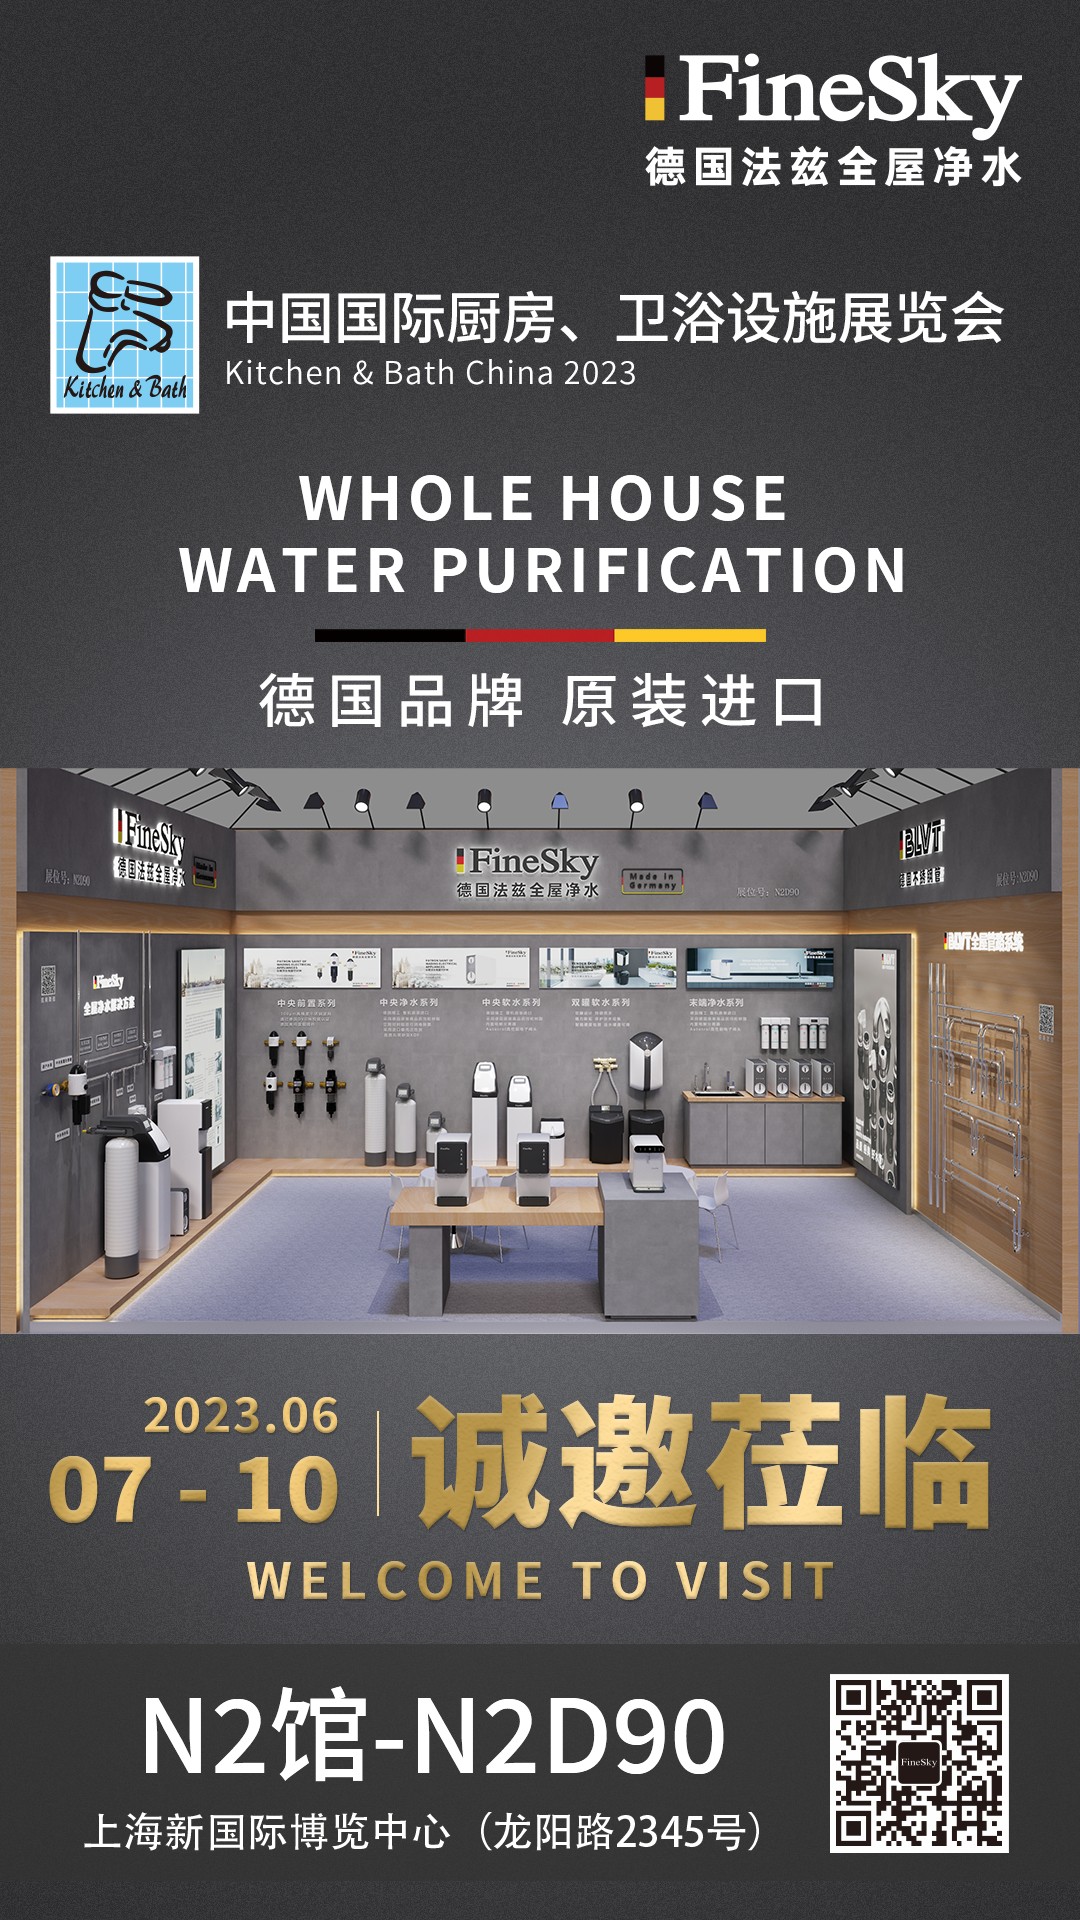 德国FineSky法兹中国国际厨房、卫浴设施展览会